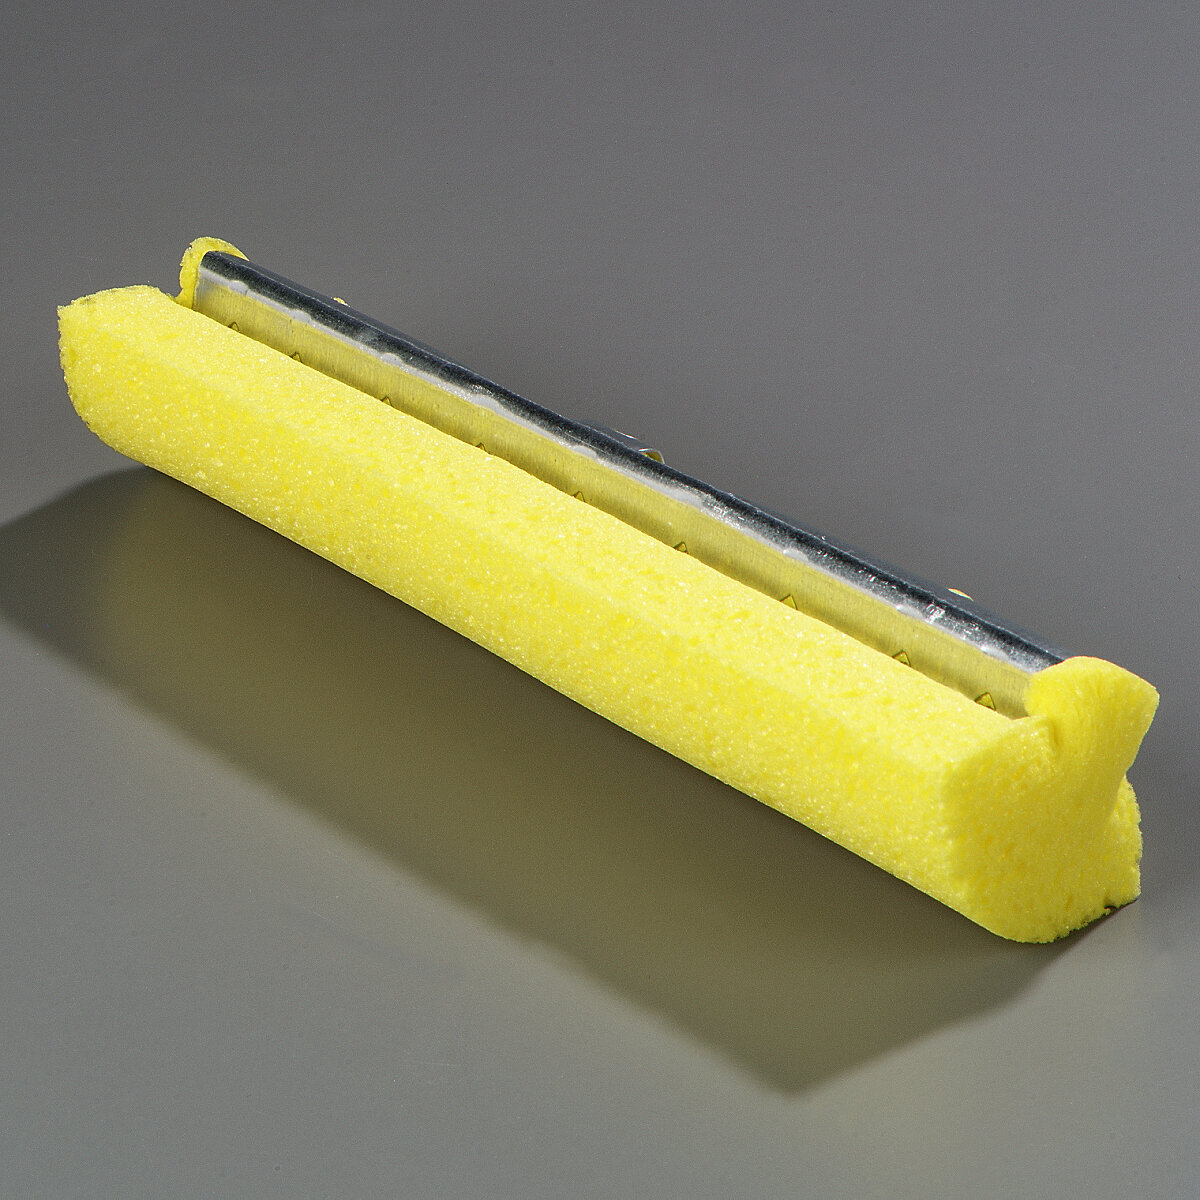 Rubbermaid Commercial Steel Roller Sponge Mop Head Refill - Yellow